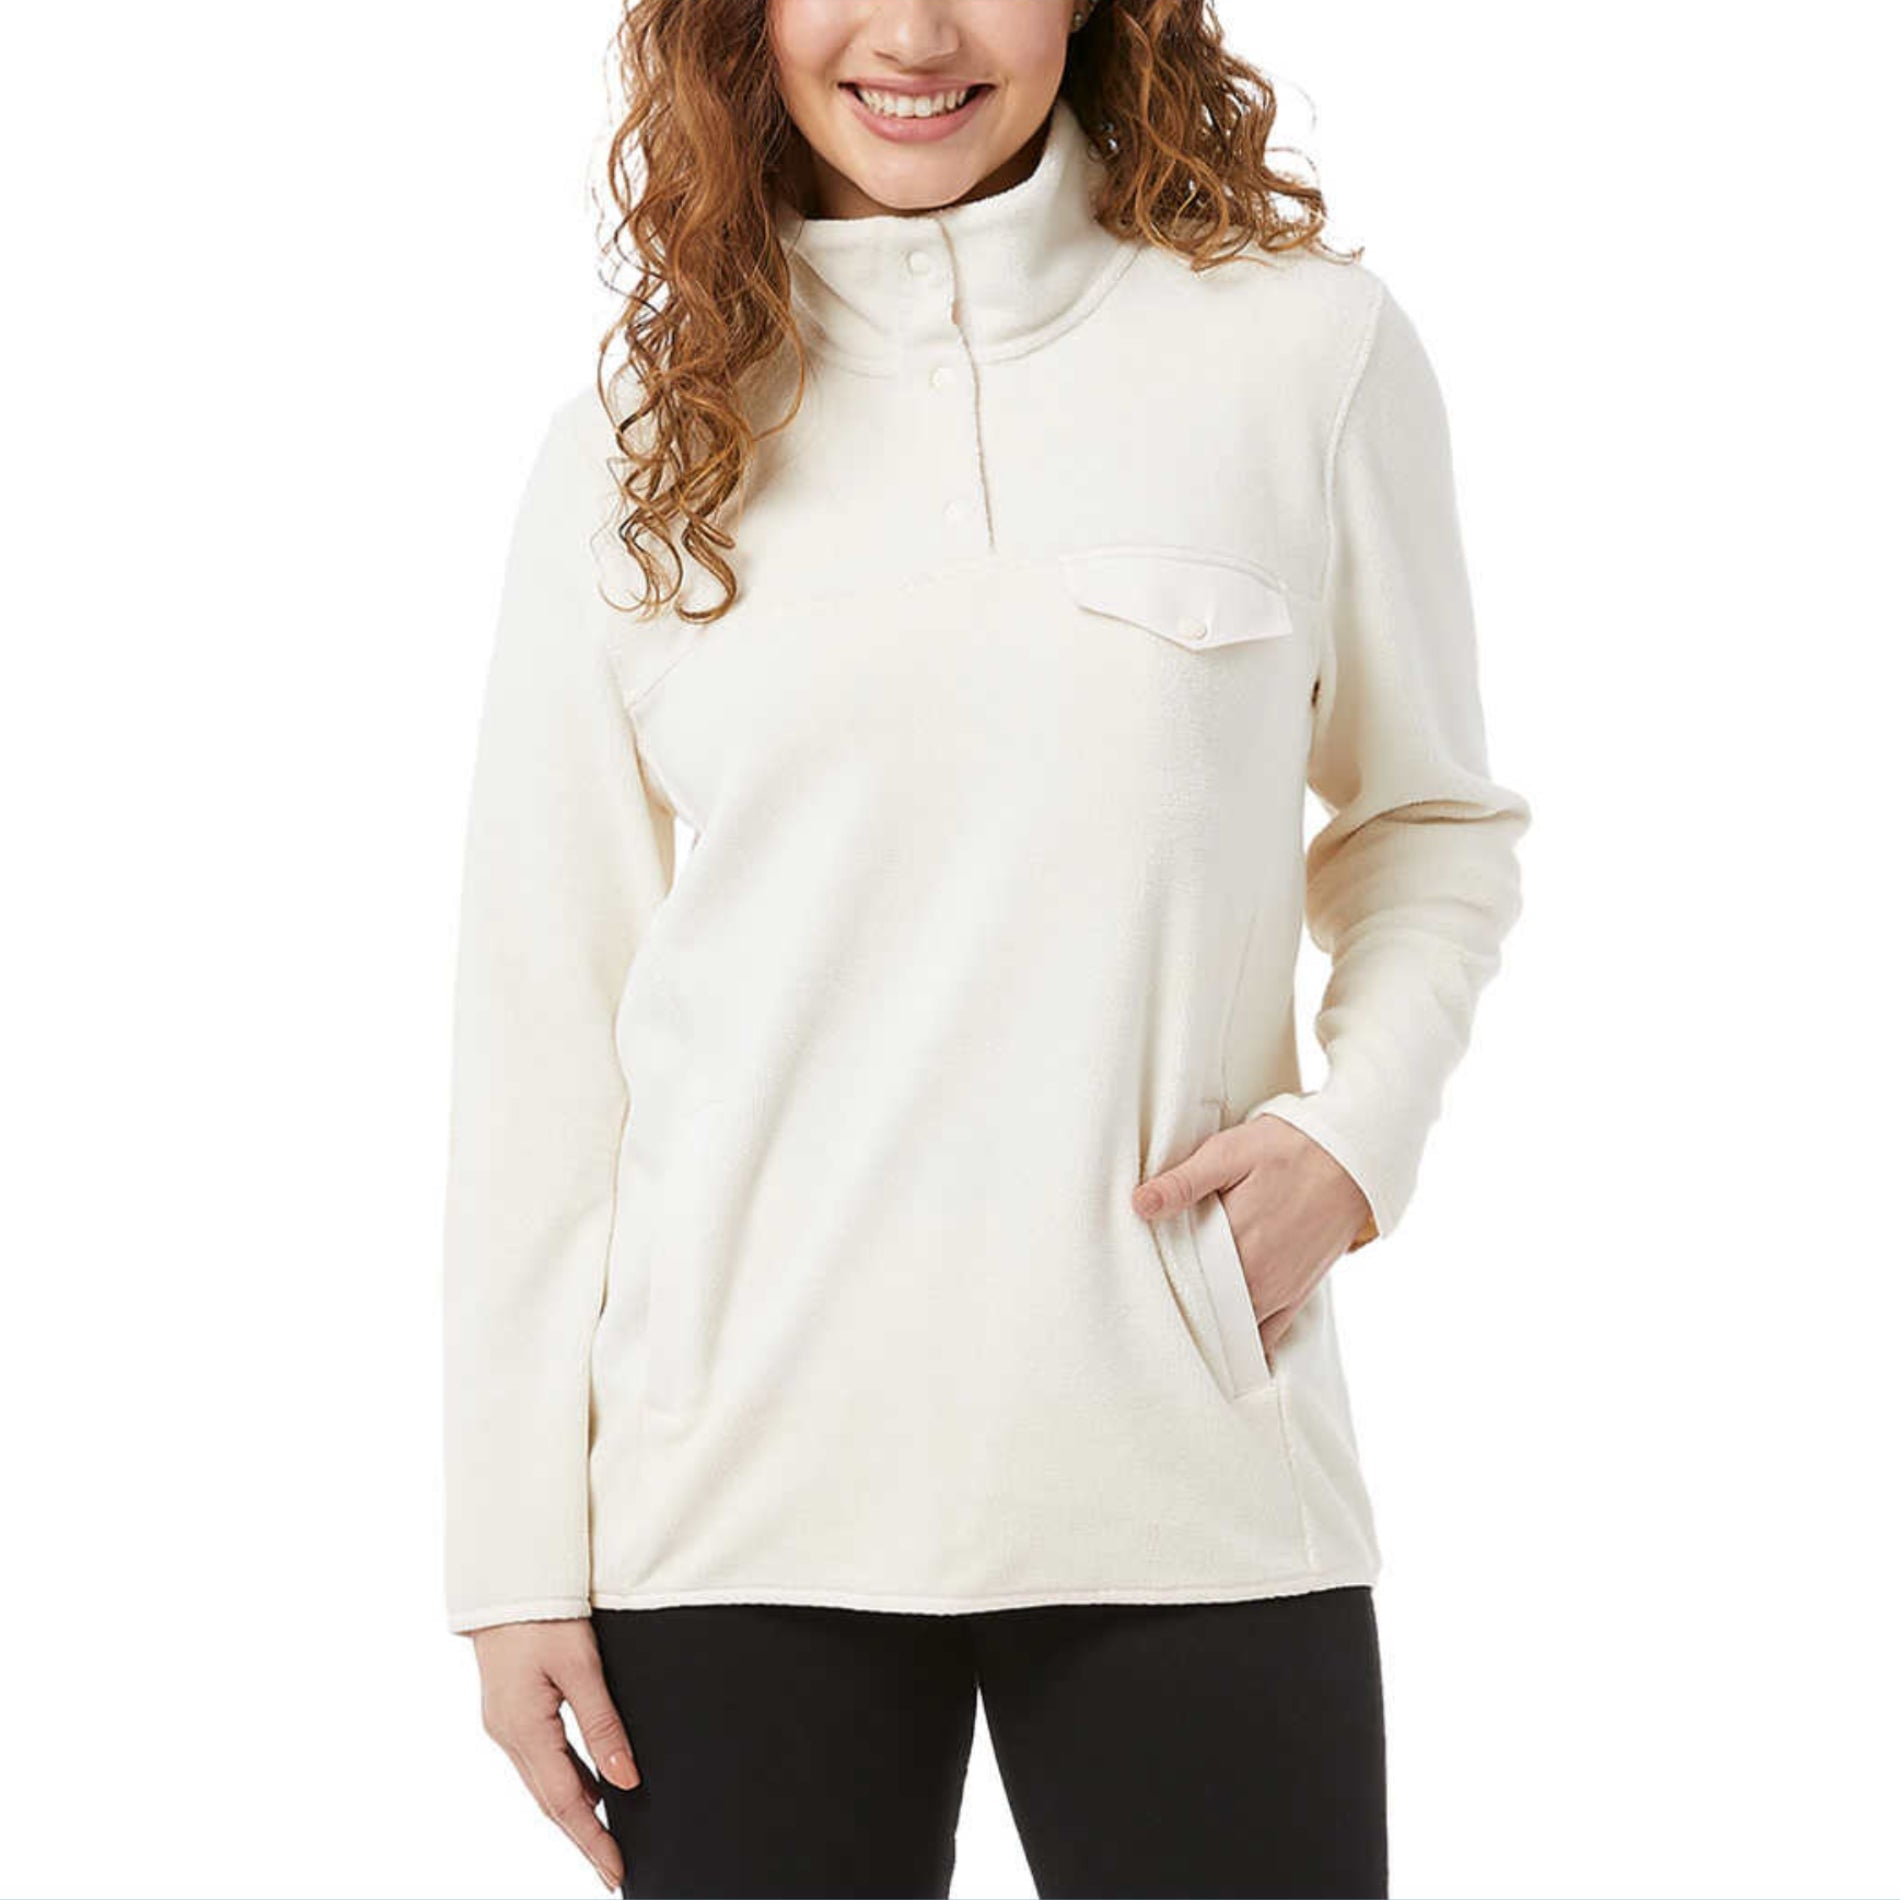 32 Degrees Women's Soft Fleece Button Snap Sweatshirt Pullover Top ...